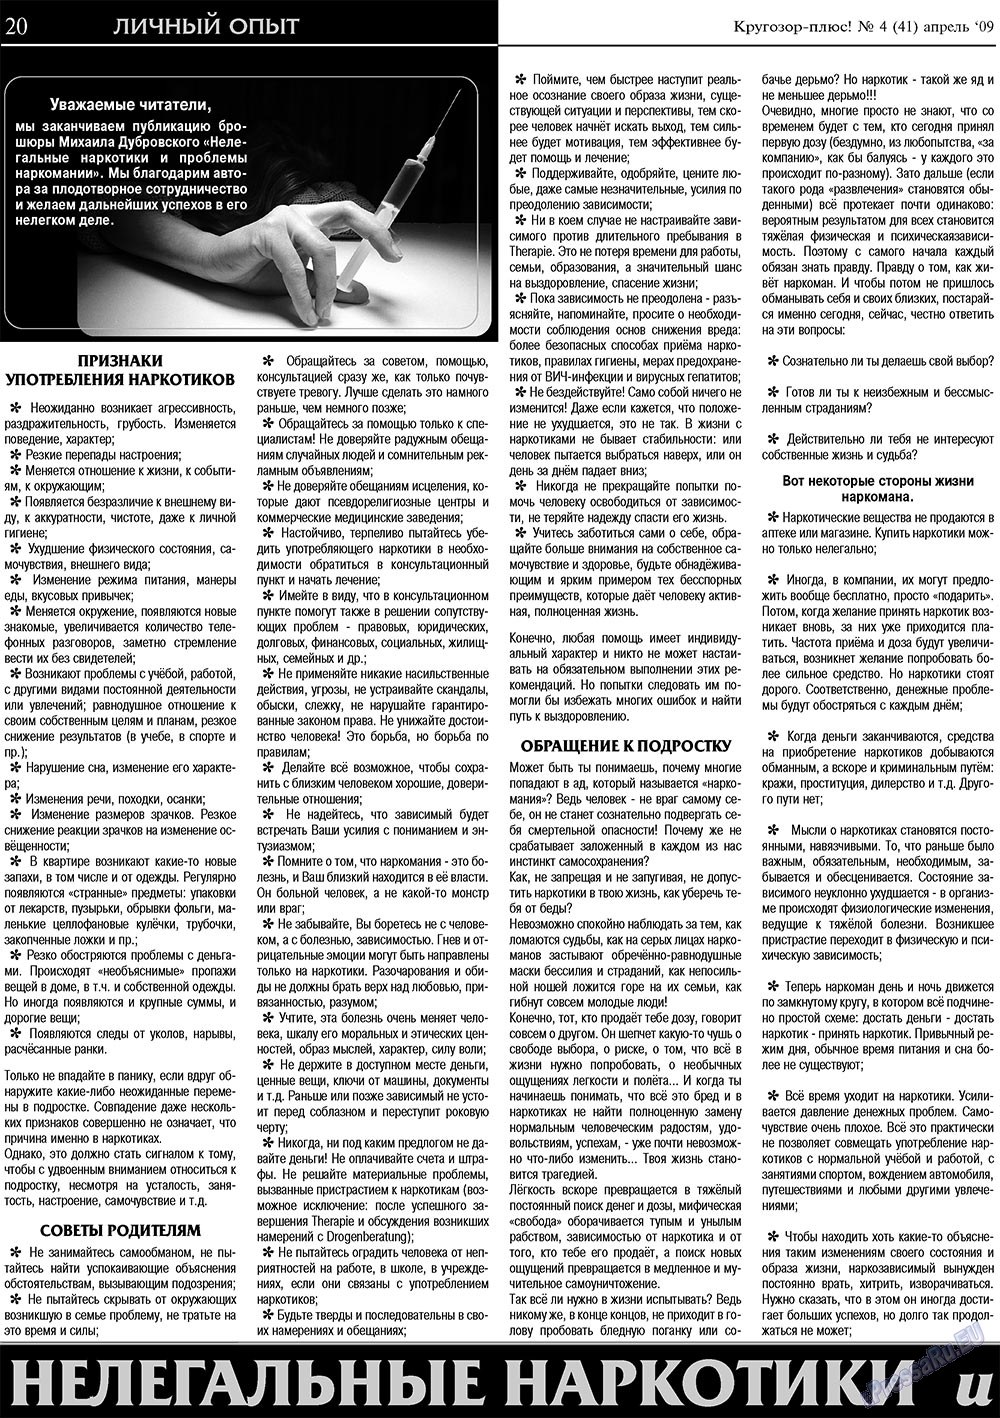 Кругозор плюс!, газета. 2009 №4 стр.20